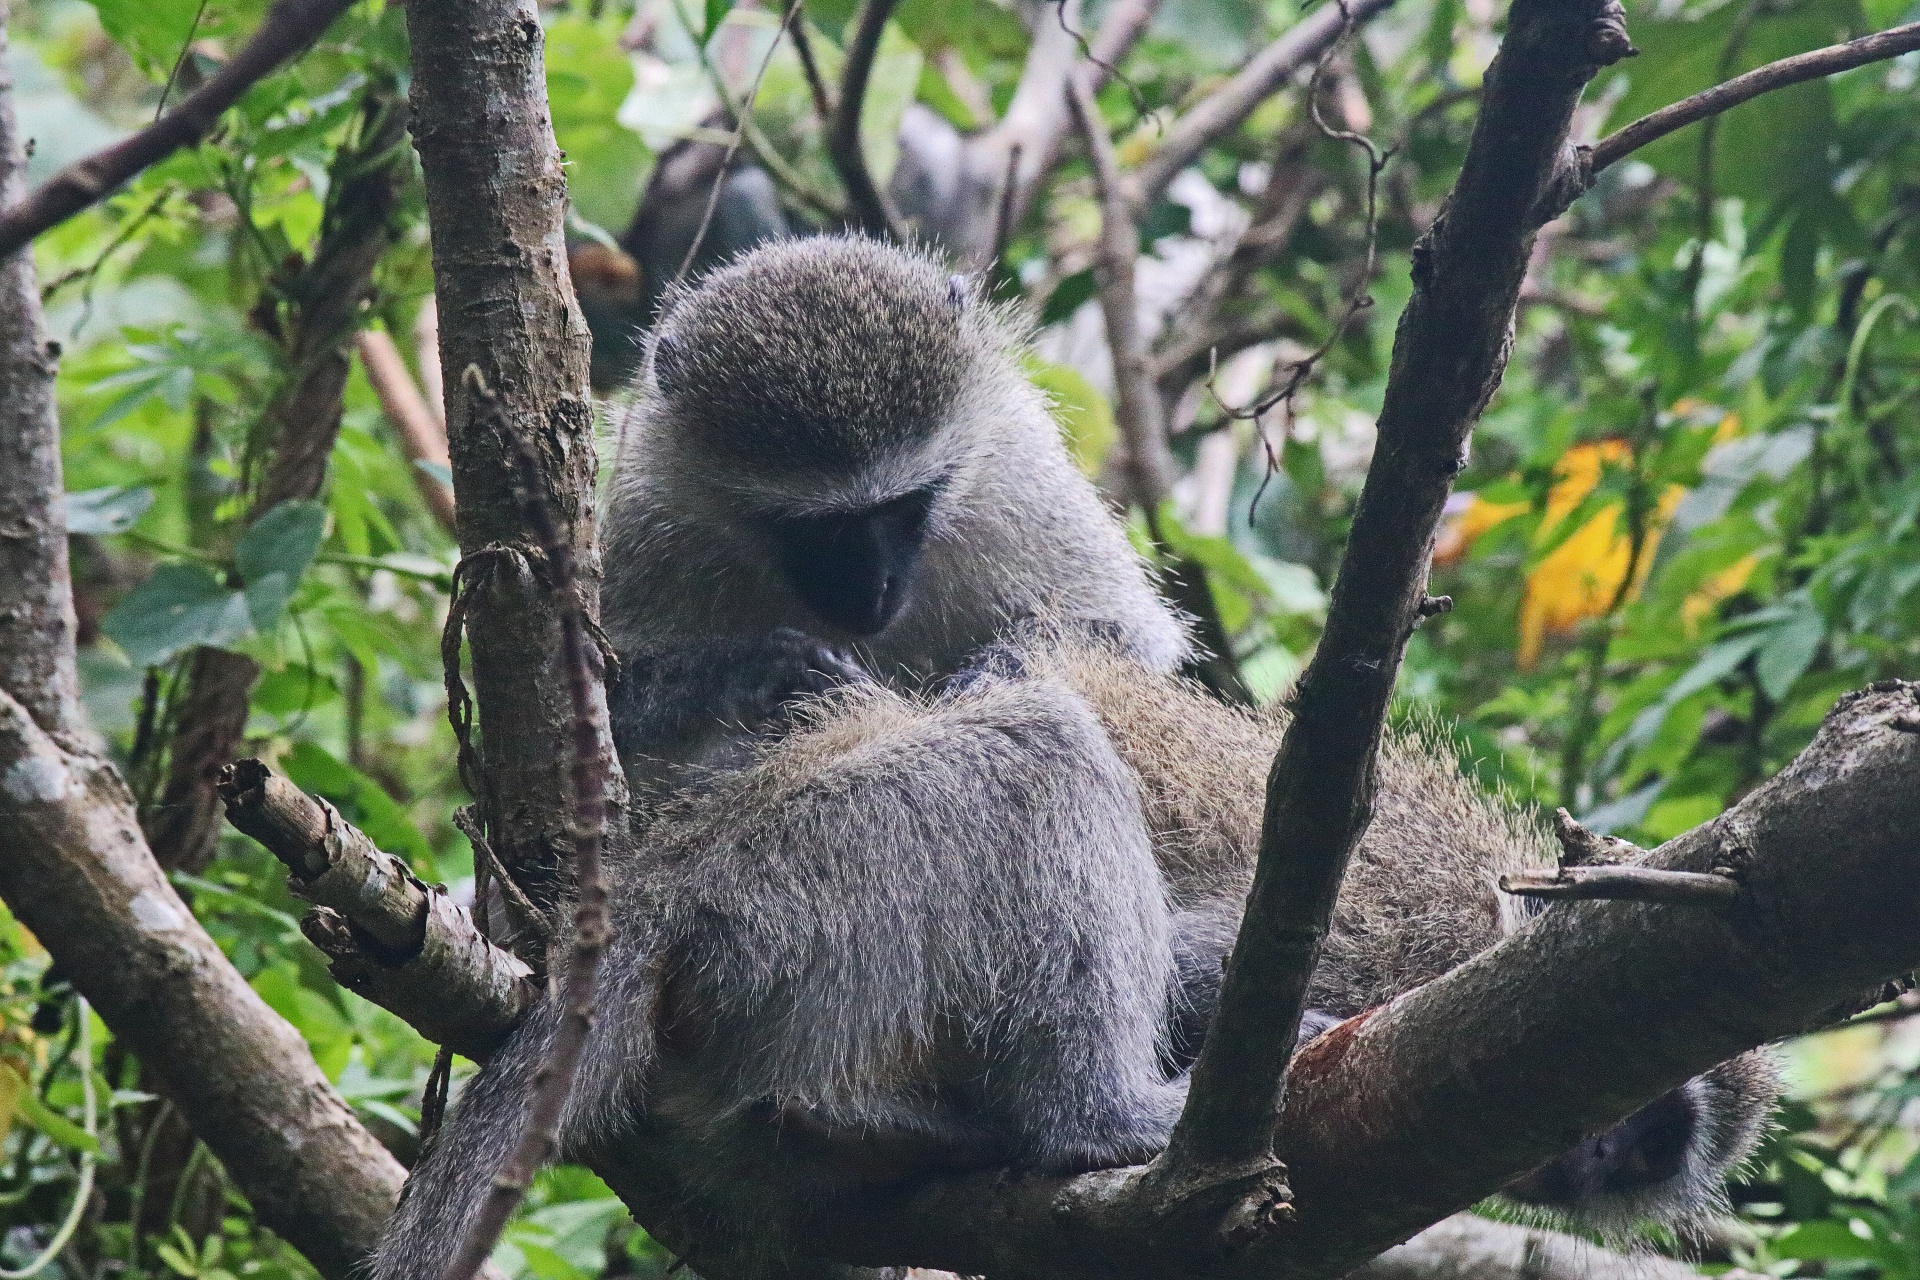 Macacos vervet em árvores interagindo